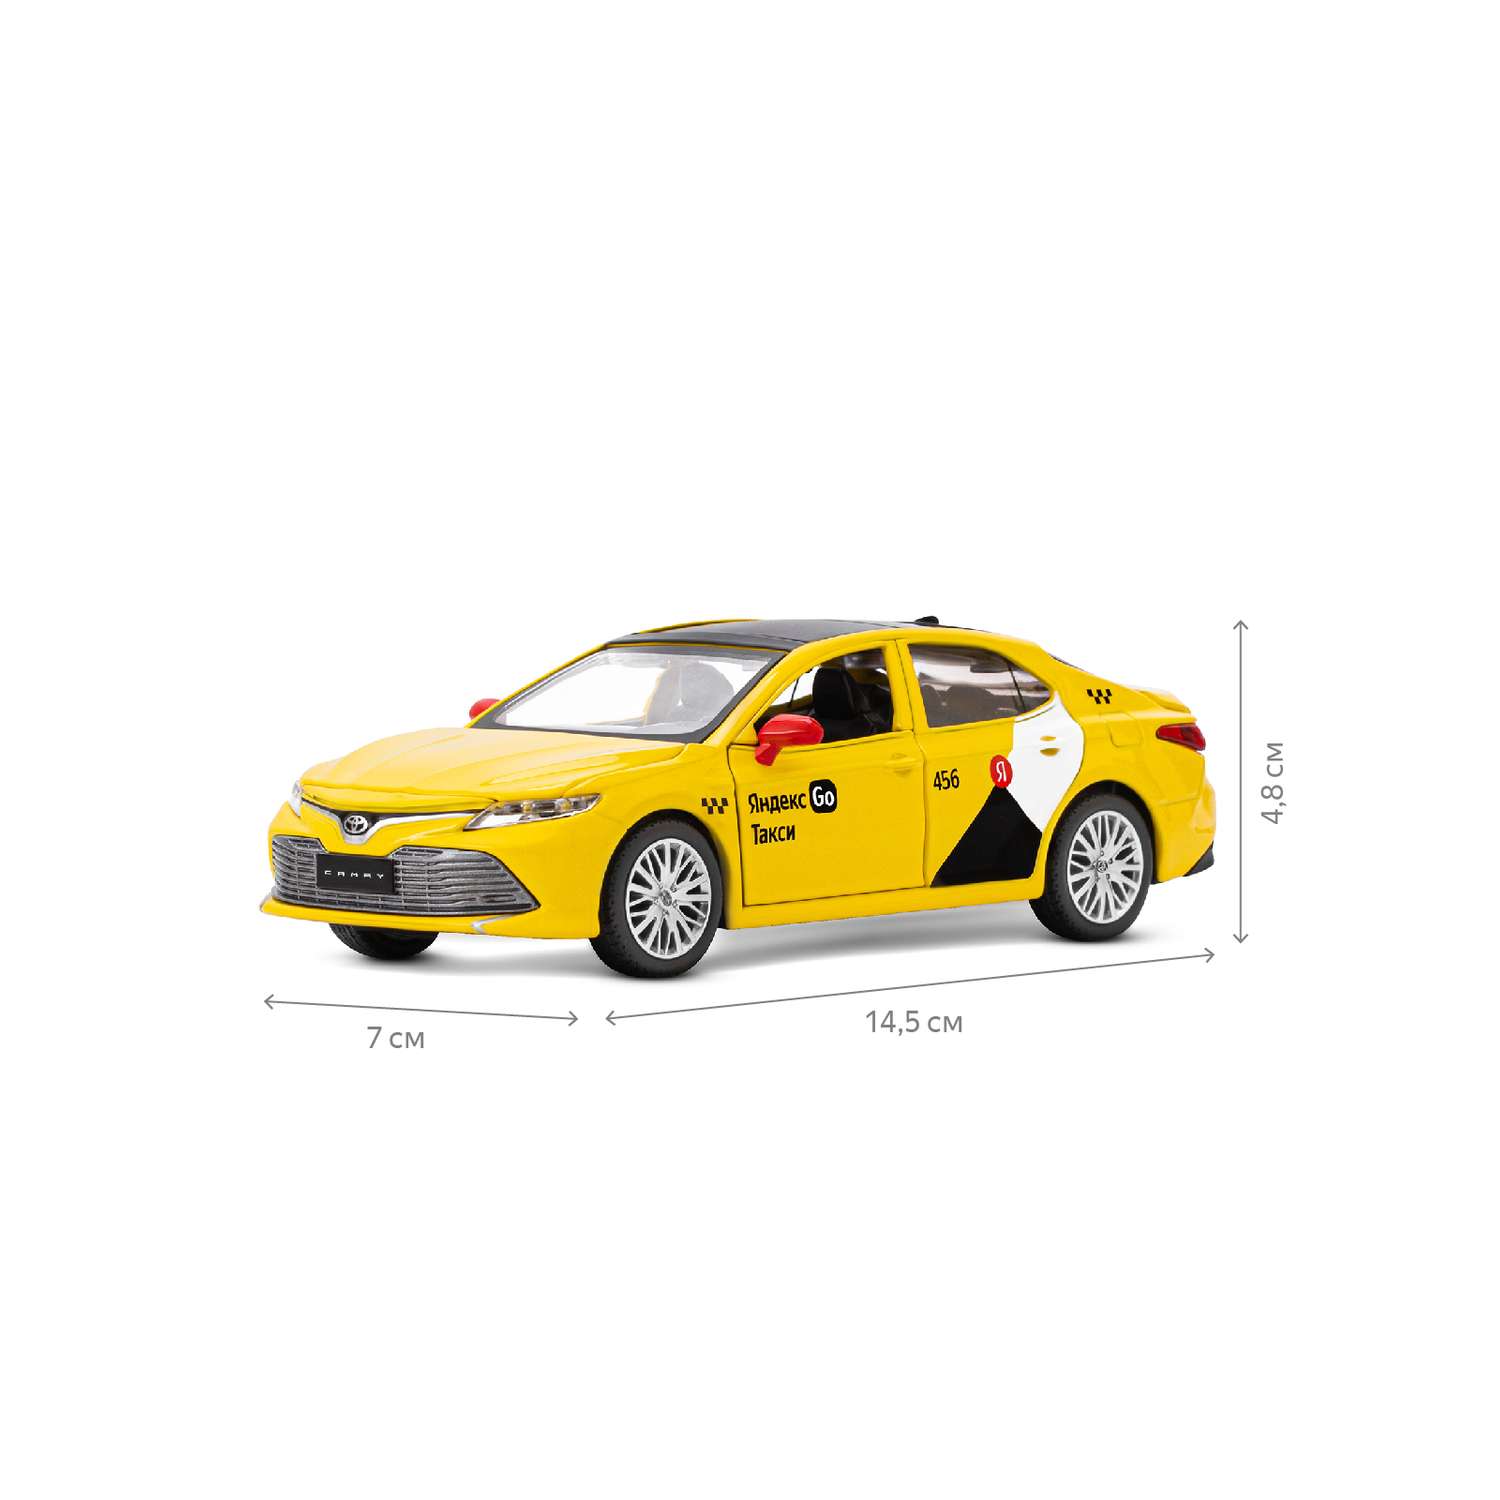 Машинка металлическая Яндекс GO игрушка детская Toyota Camry цвет желтый Озвучено Алисой JB1251482 - фото 5